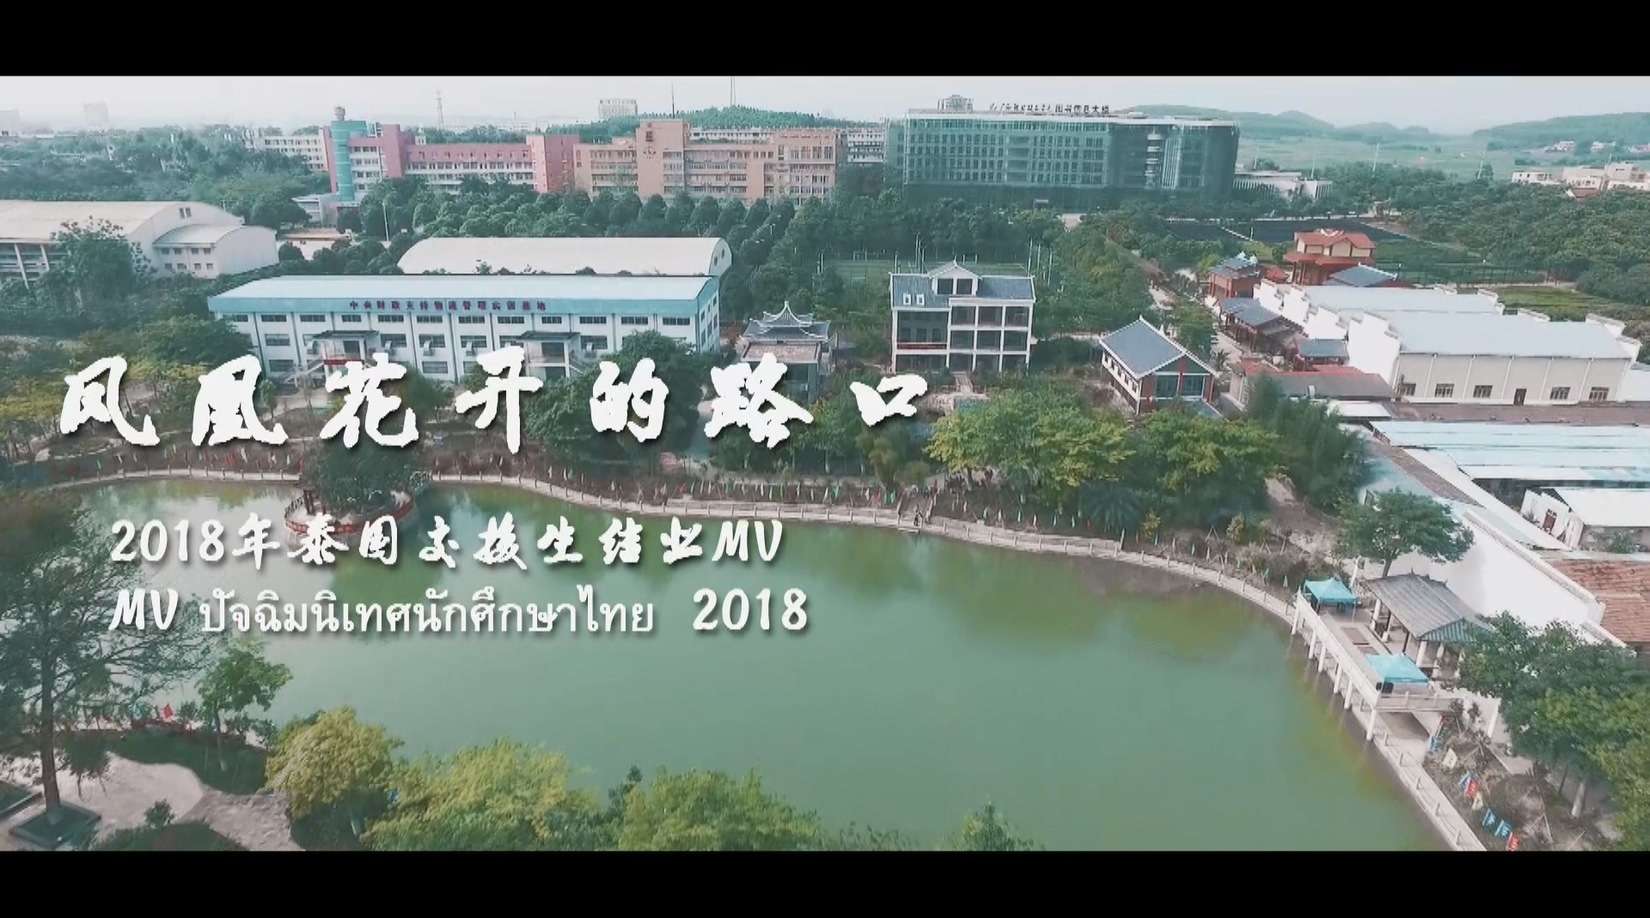 2018年广西职业技术学院泰国交换生结业MV